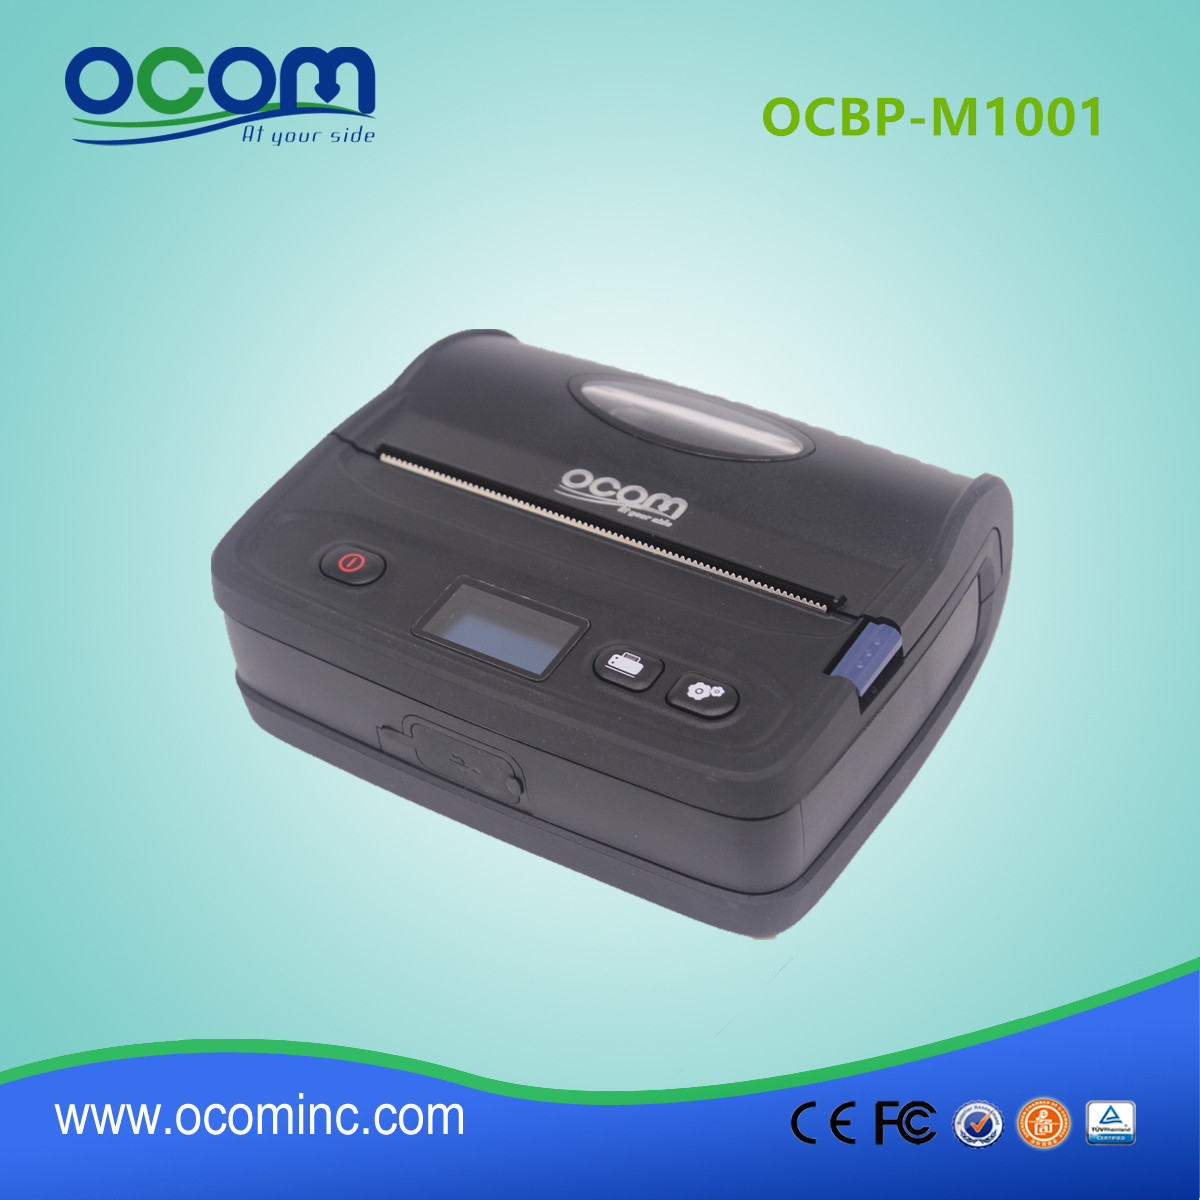 OCBP-M1001 4inch Mini Handheld Mobile Label Printer